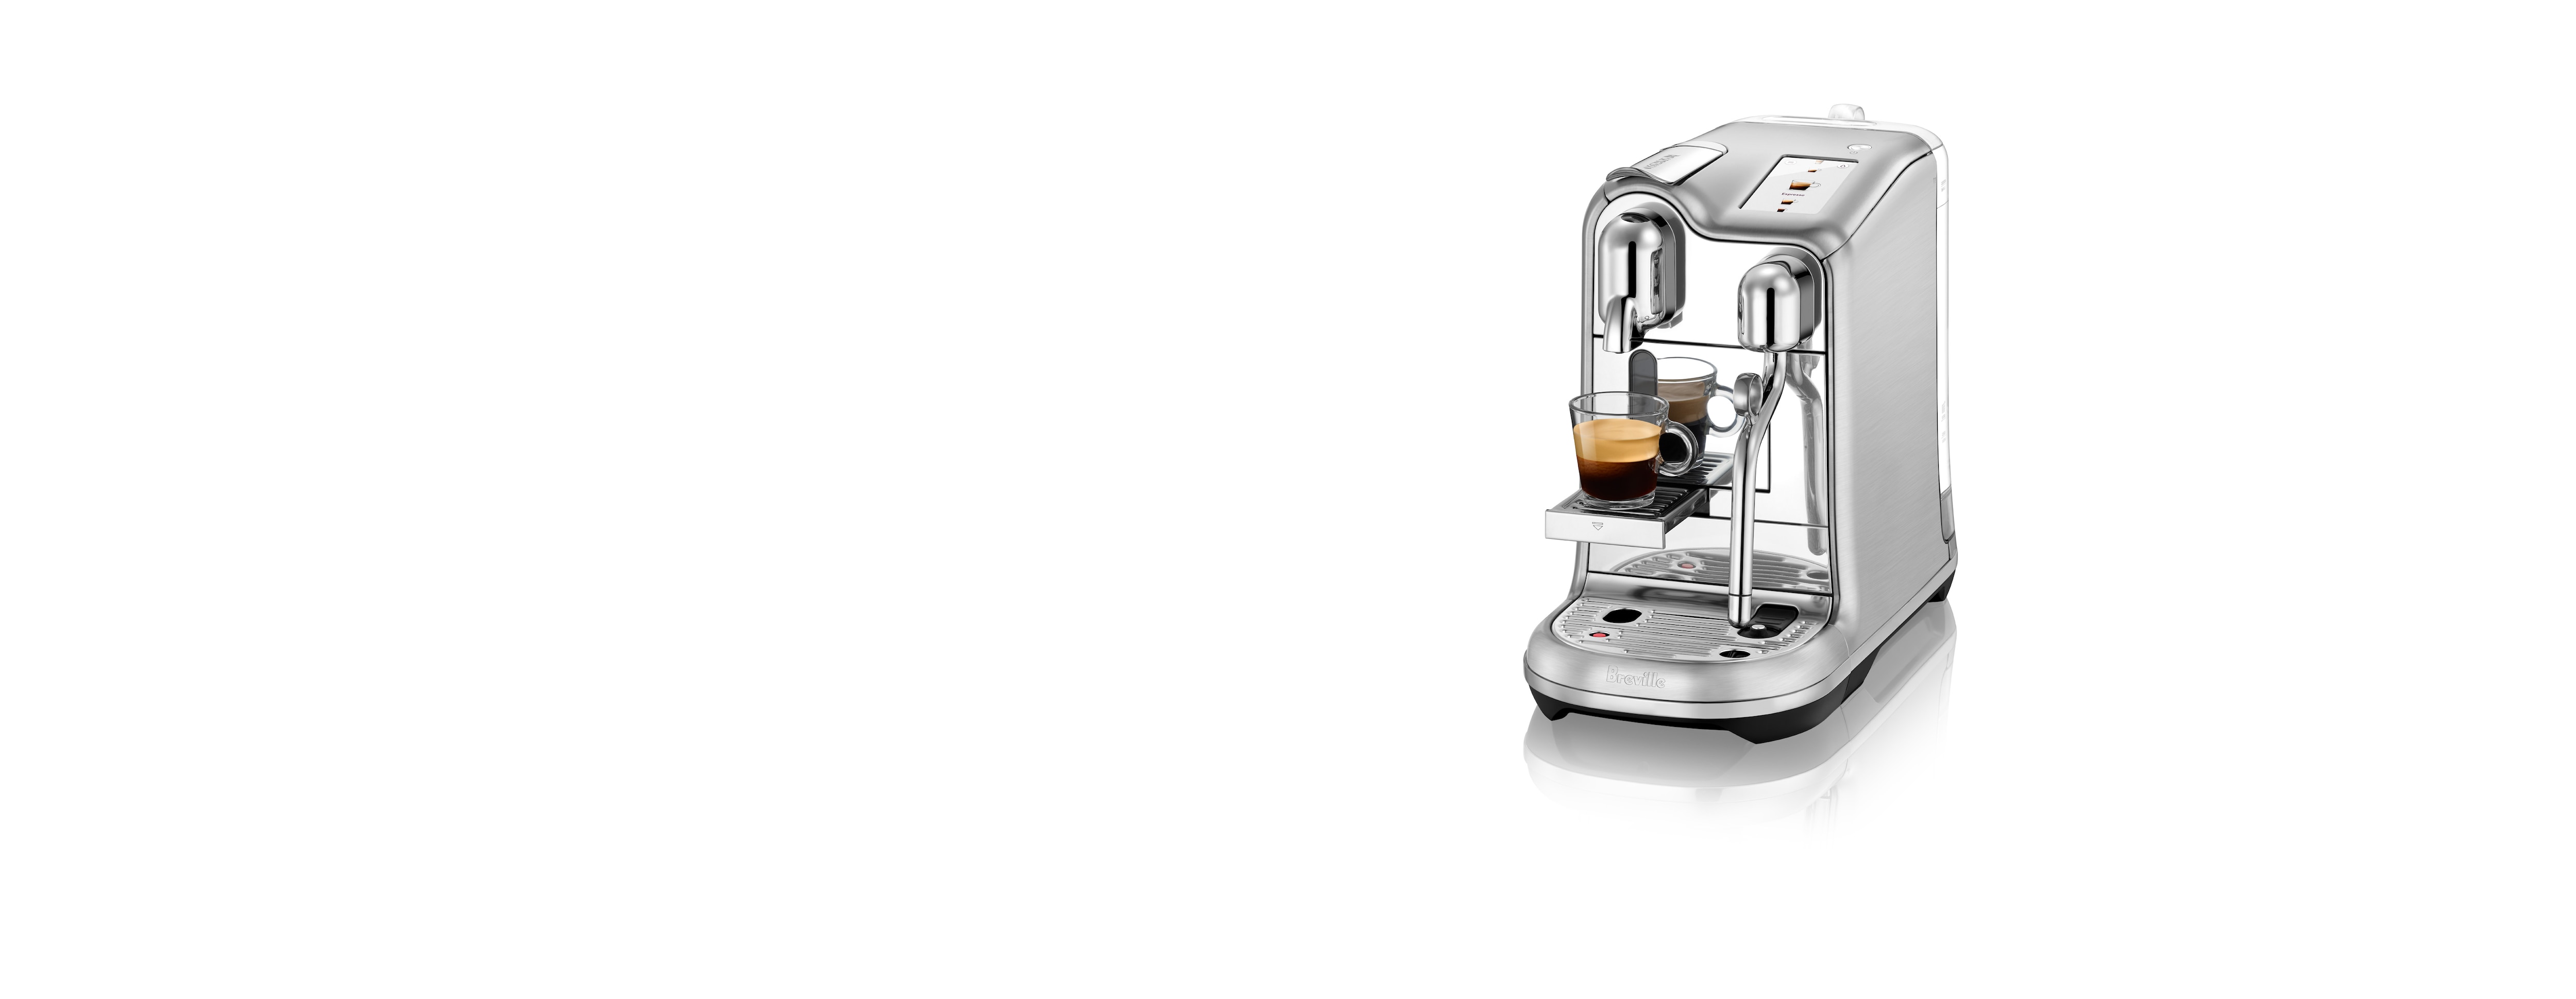 Original Espresso Machines & Buying Guide | Nespresso USA